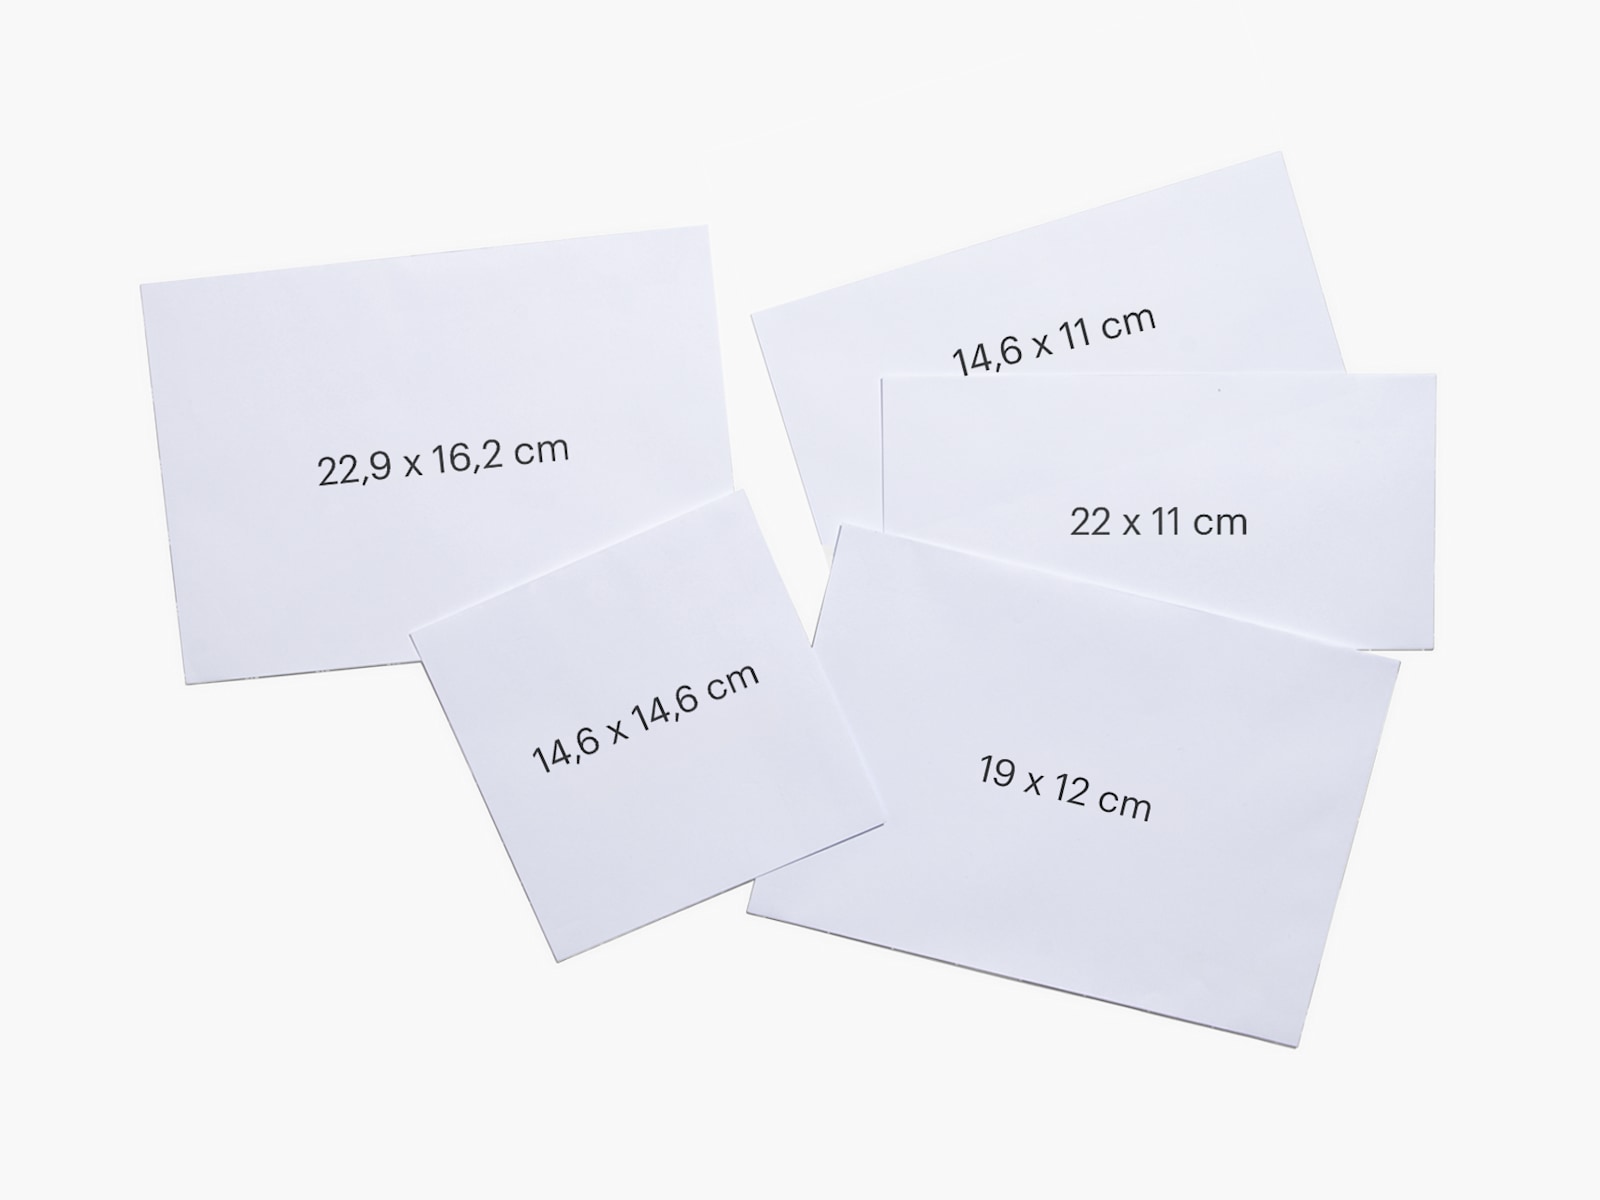 Cinq enveloppes personnalisées de formats différents. Les dimensions de chacune d’elles sont indiquées dessus.